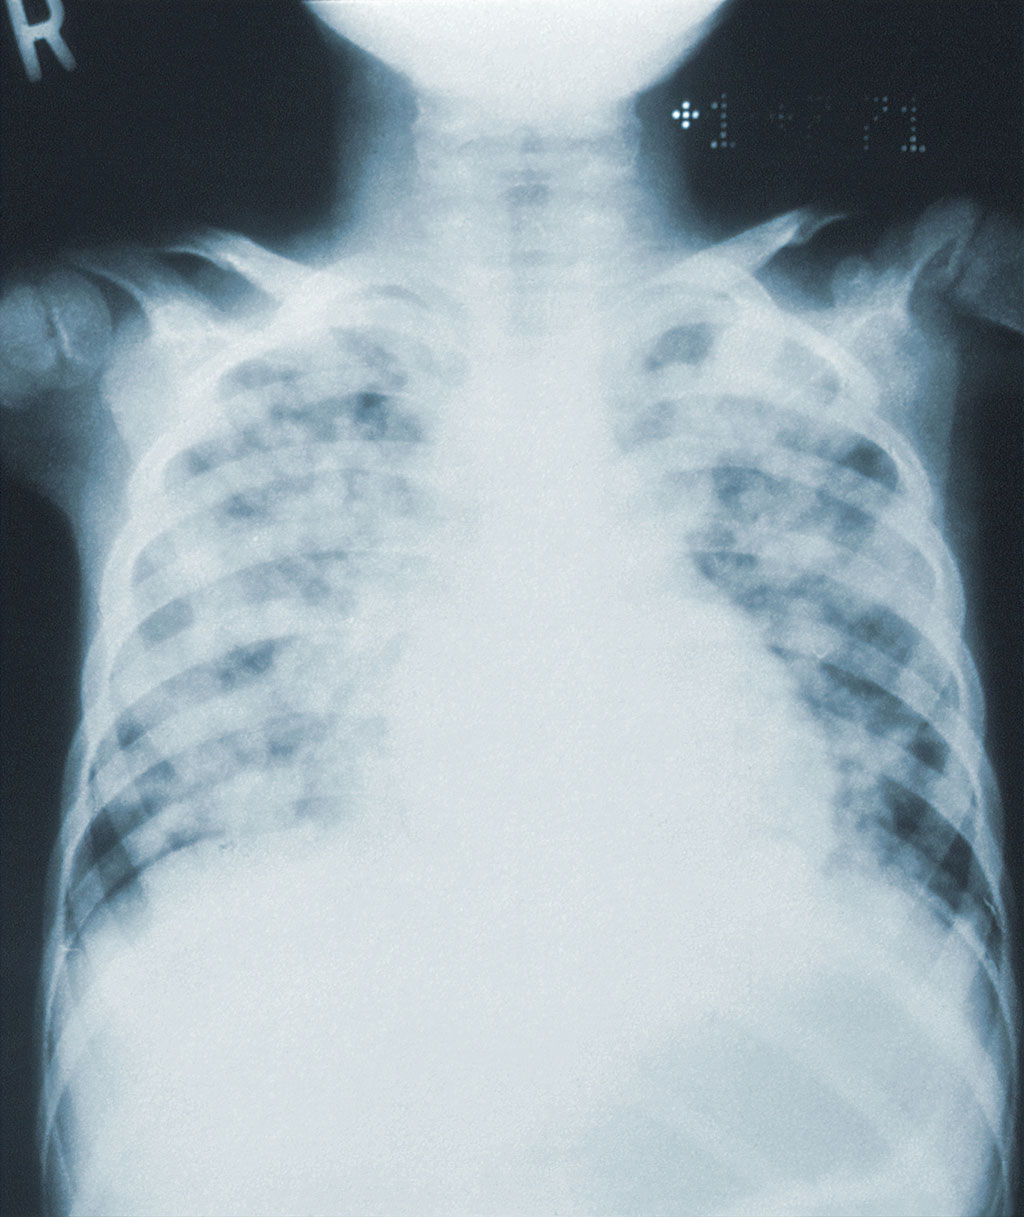 Imagen: Nueva tecnología basada en IA para el análisis de TC de tórax de la fibrosis pulmonar idiopática (Fotografía cortesía de Unsplash)